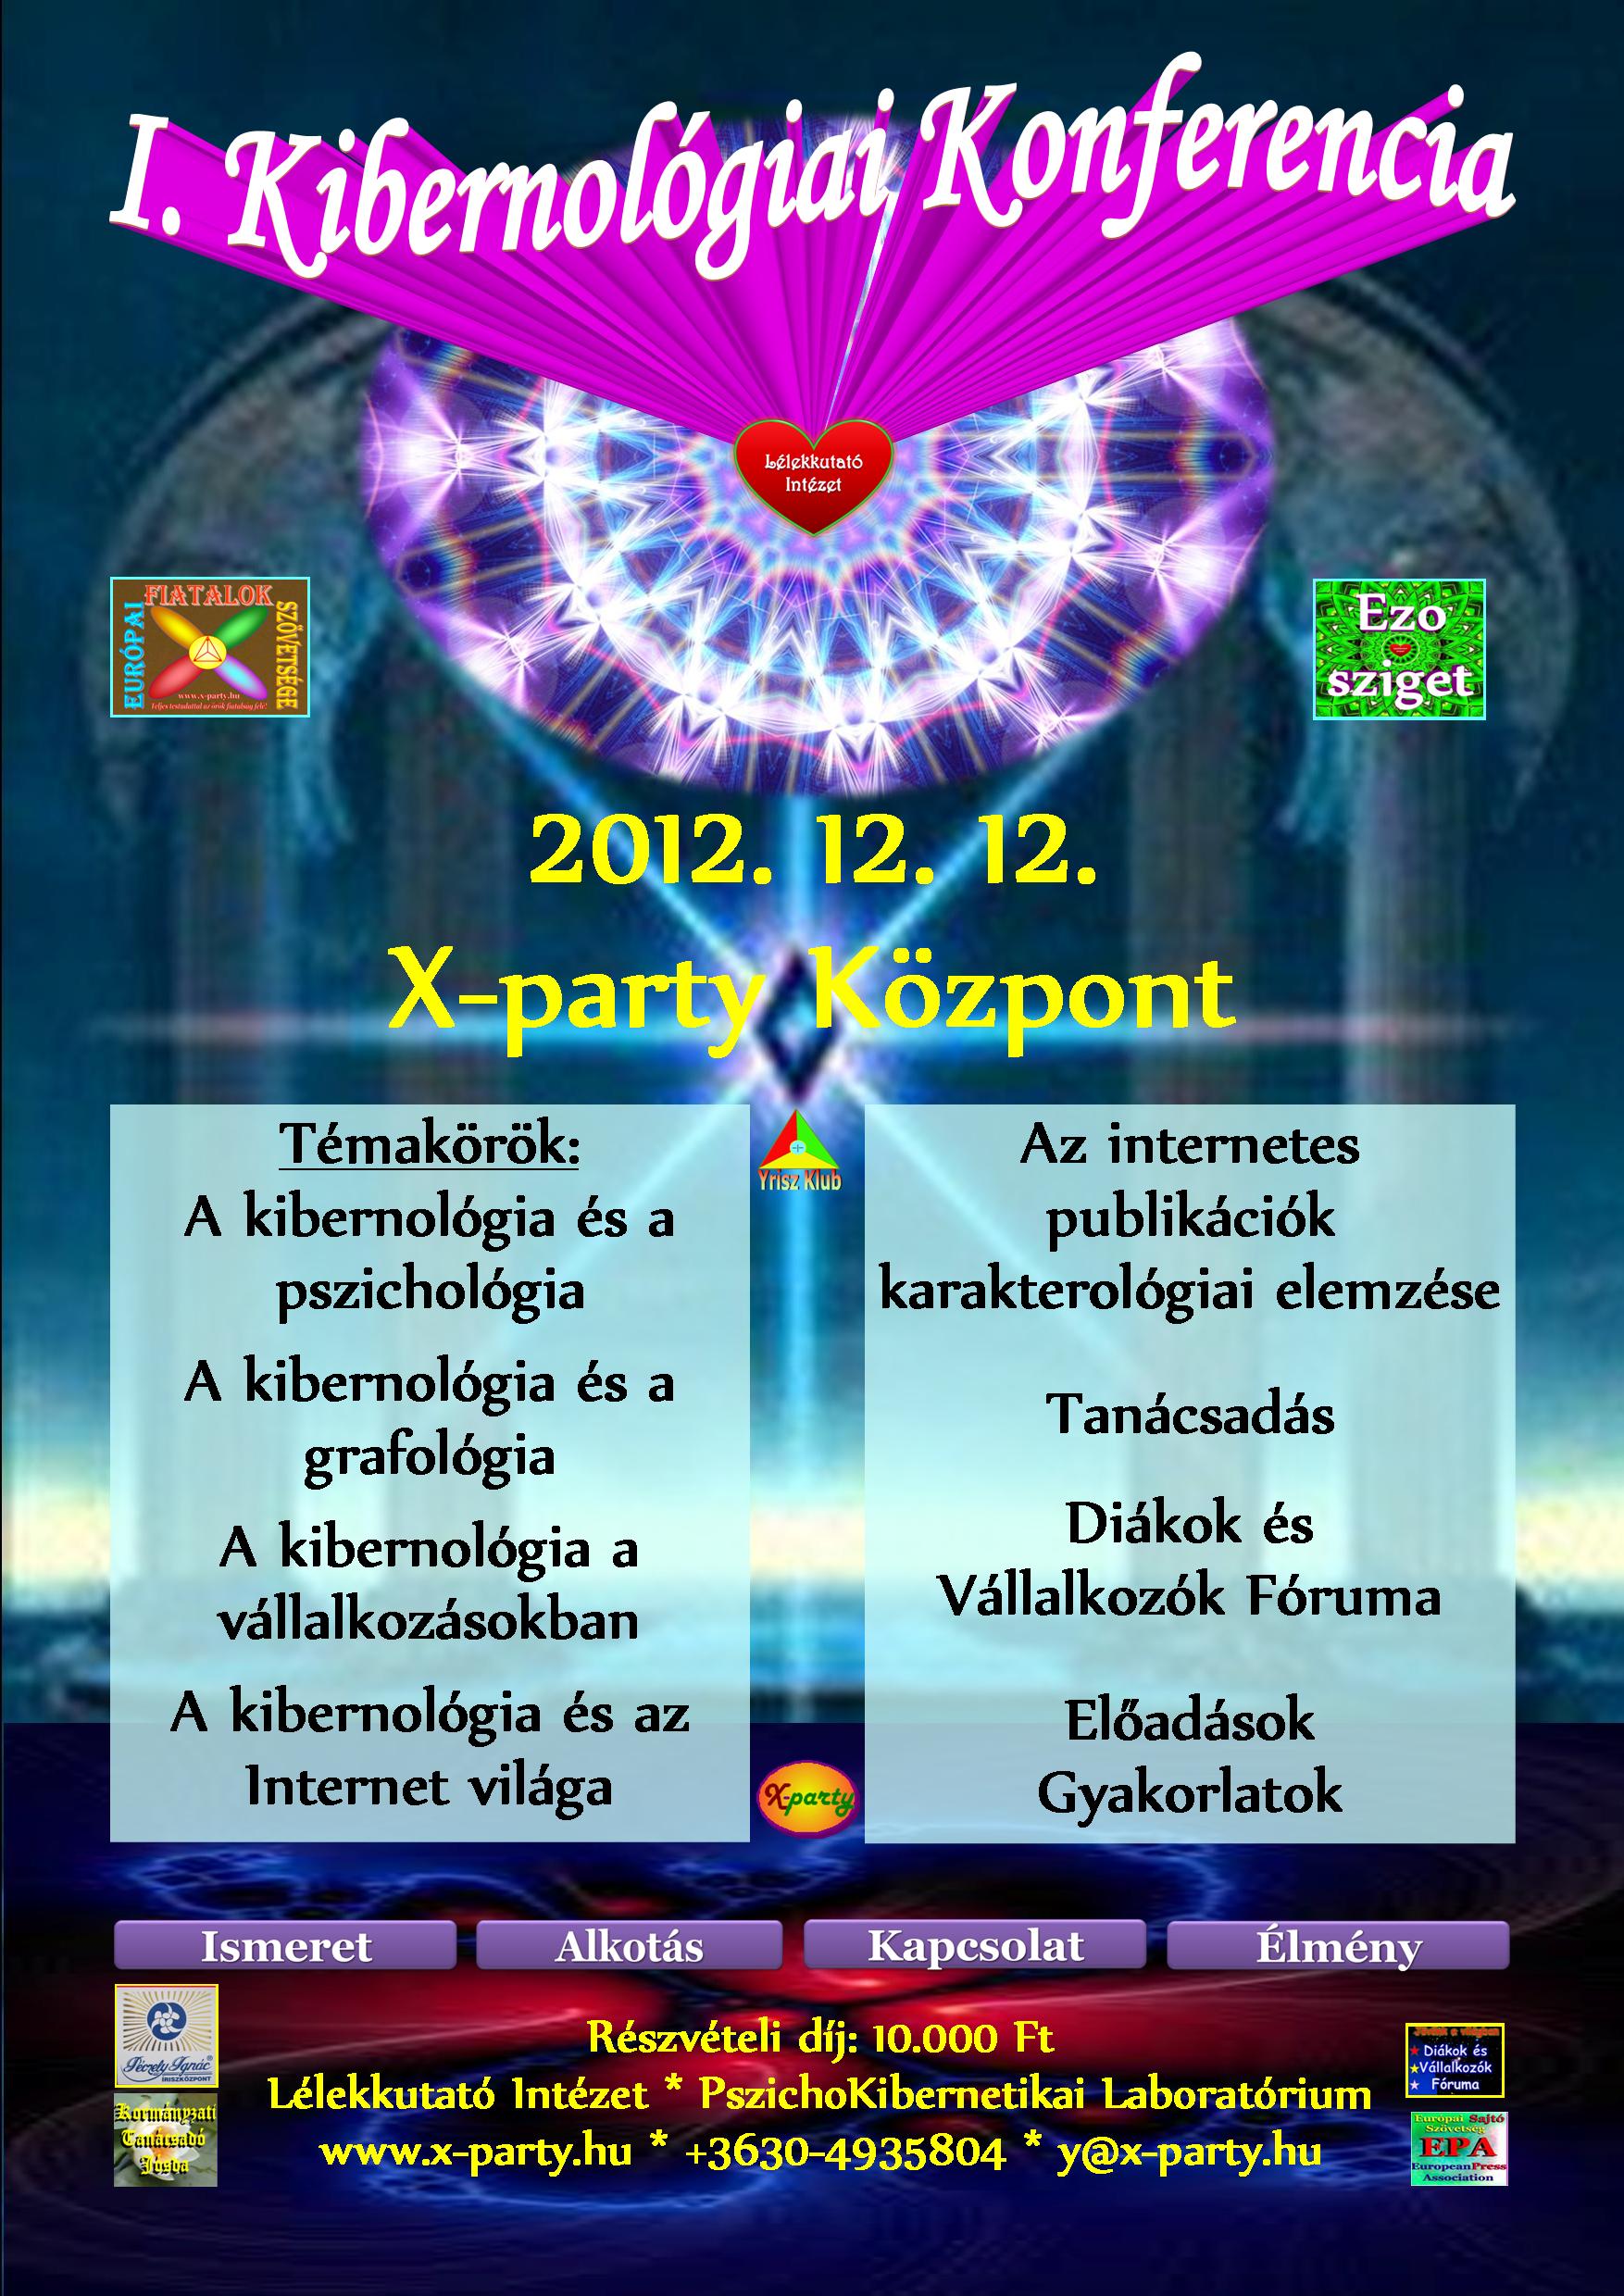 I. kibernológiai Konferencia - I. Cybernology Conference